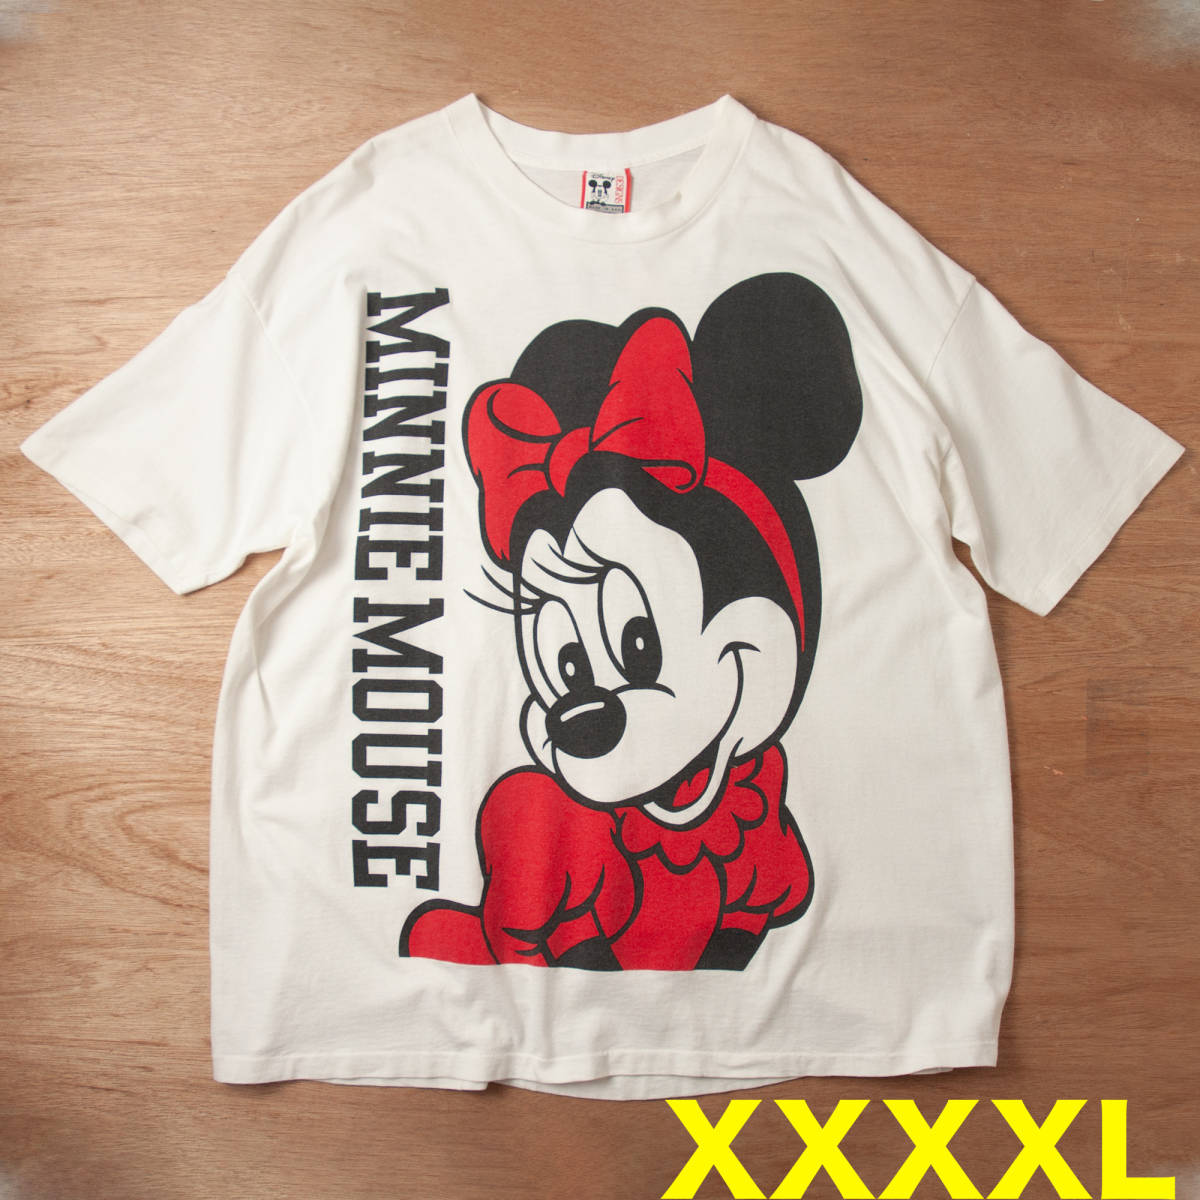 特価商品 XXXXL 超ビッグサイズ ミニーTシャツ アメリカ製 ディズニー